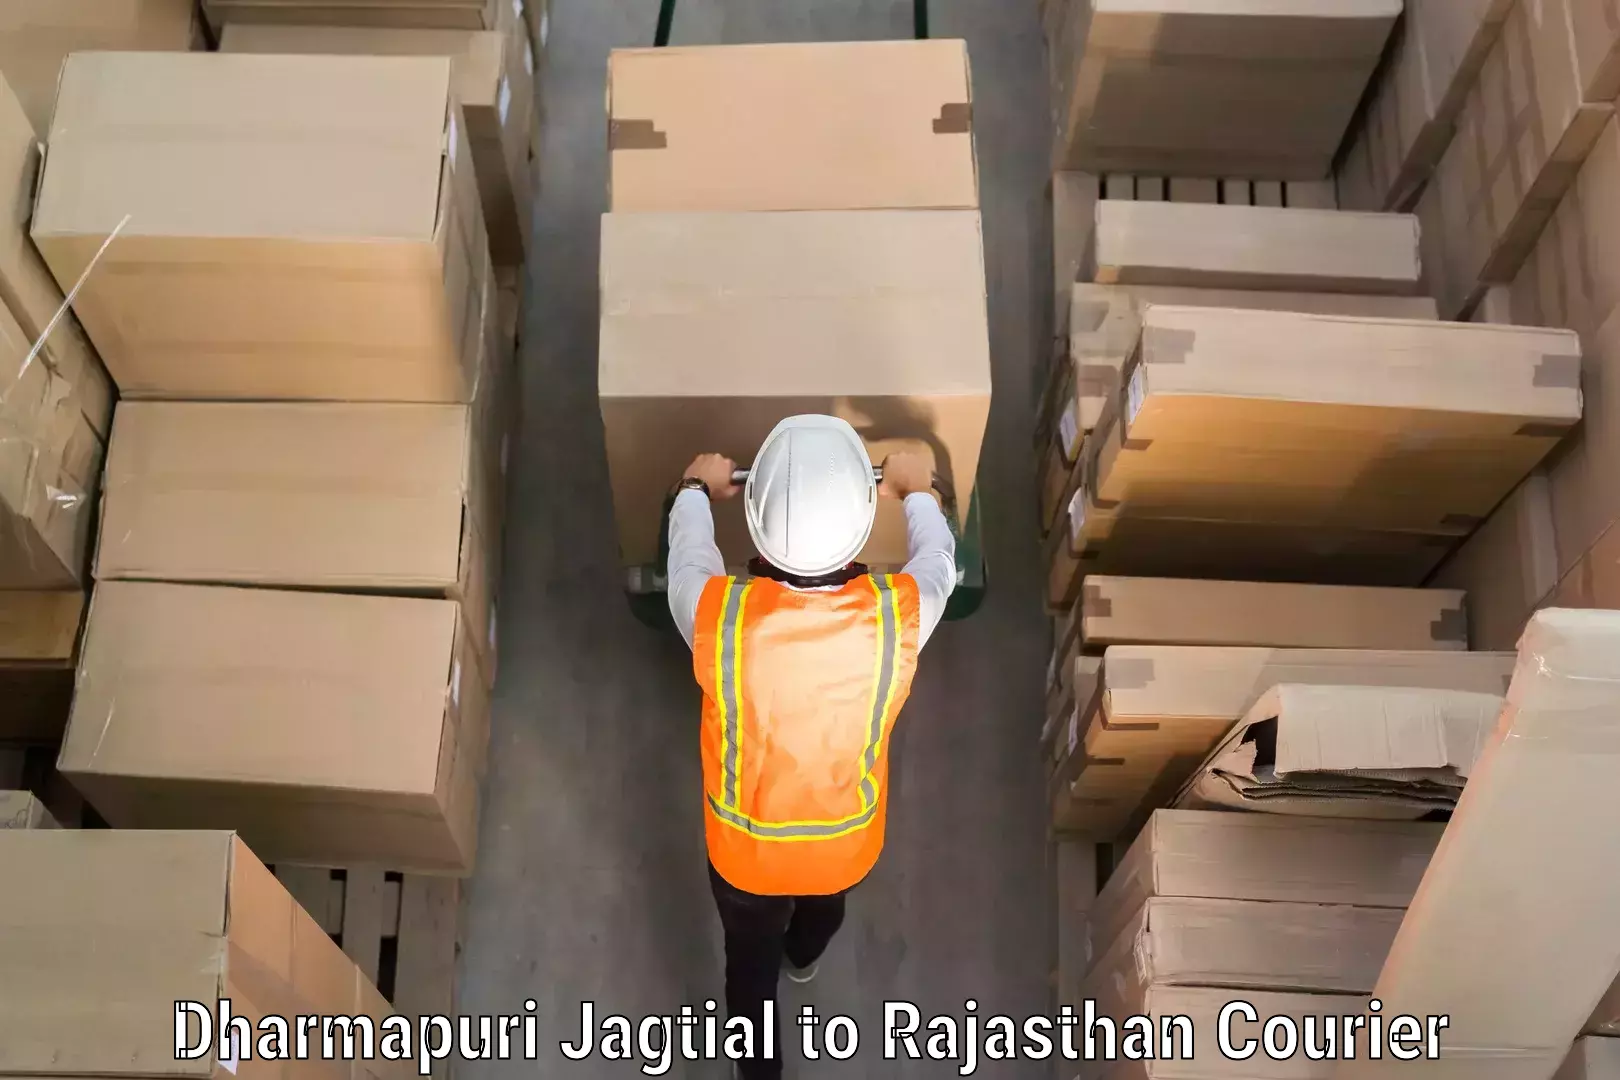 Digital baggage courier Dharmapuri Jagtial to Lakheri